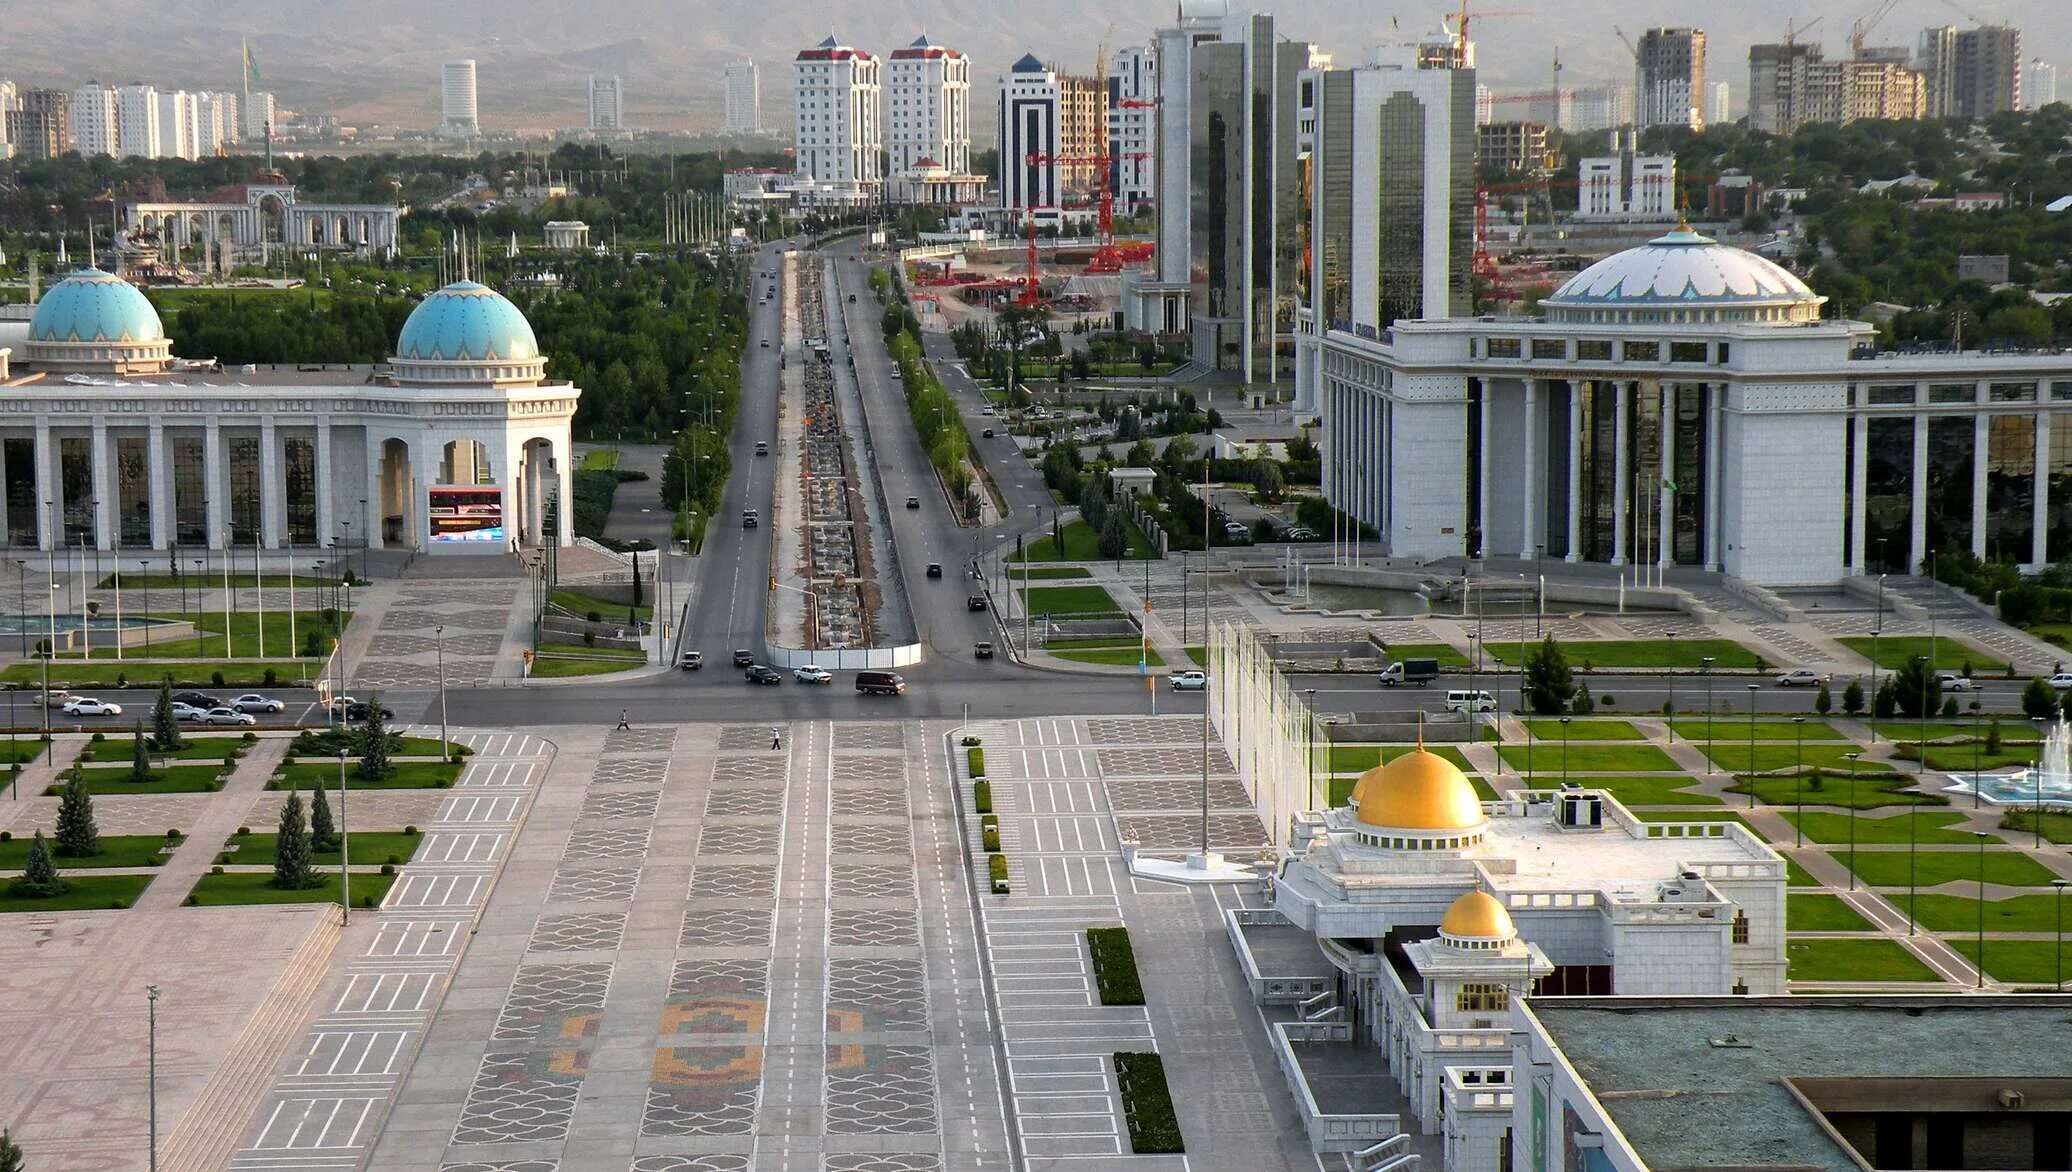 Туркменистан столица Туркмении Ашхабад. Ашгабат Туркменистан Ашхабад. Дворцовый комплекс «Огузхан» Ашхабад. Ашхабад столица Туркменистана достопримечательности. Создай таджикский